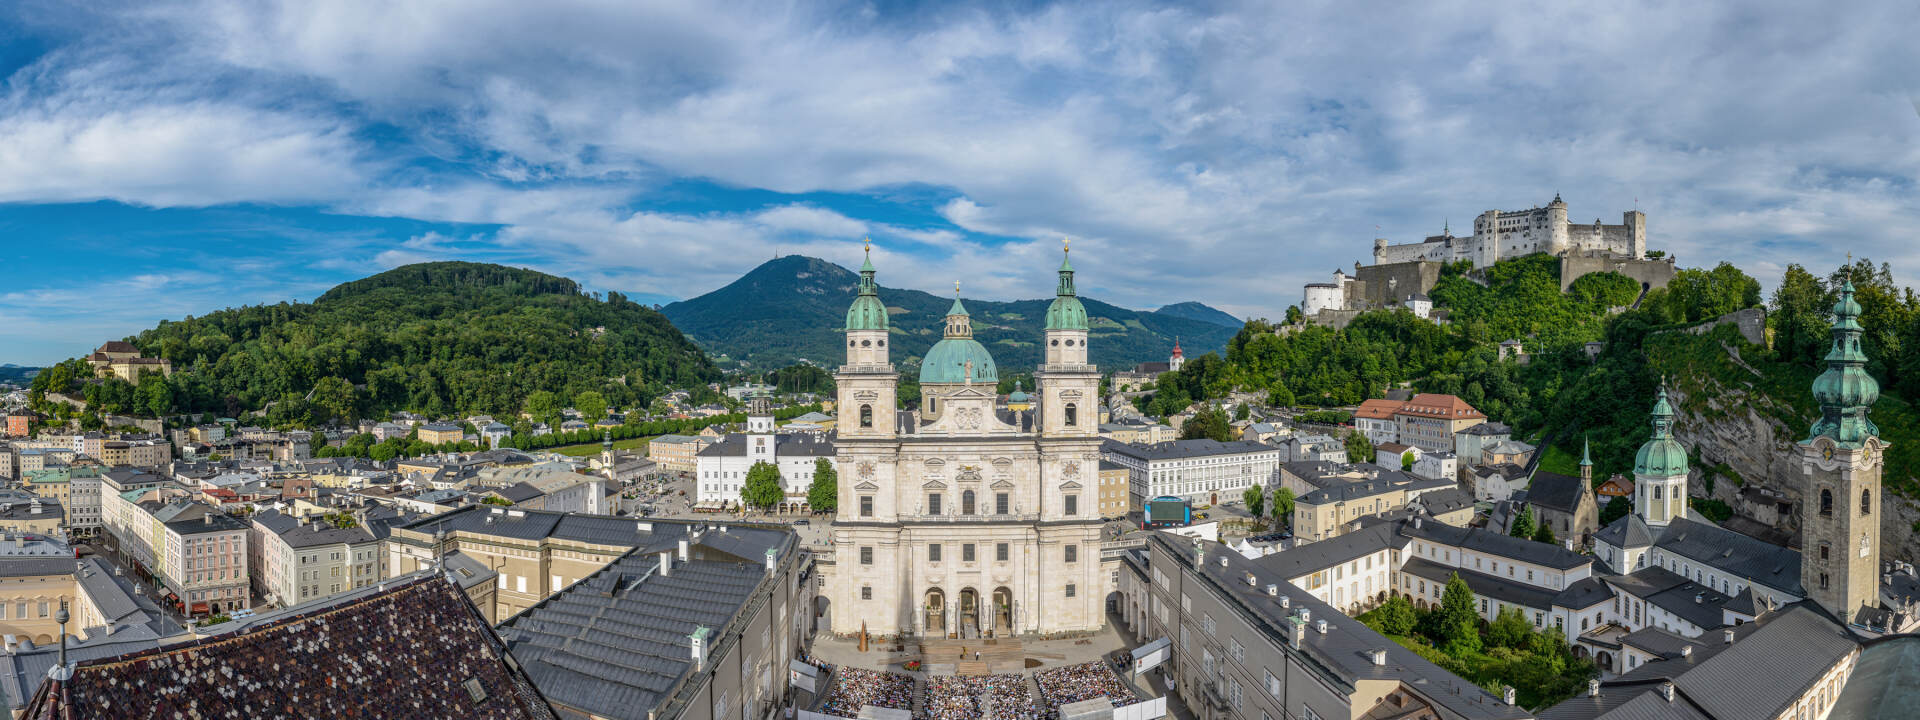 Salzburg panorama - Cathedral Square © Tourismus Salzburg GmbH